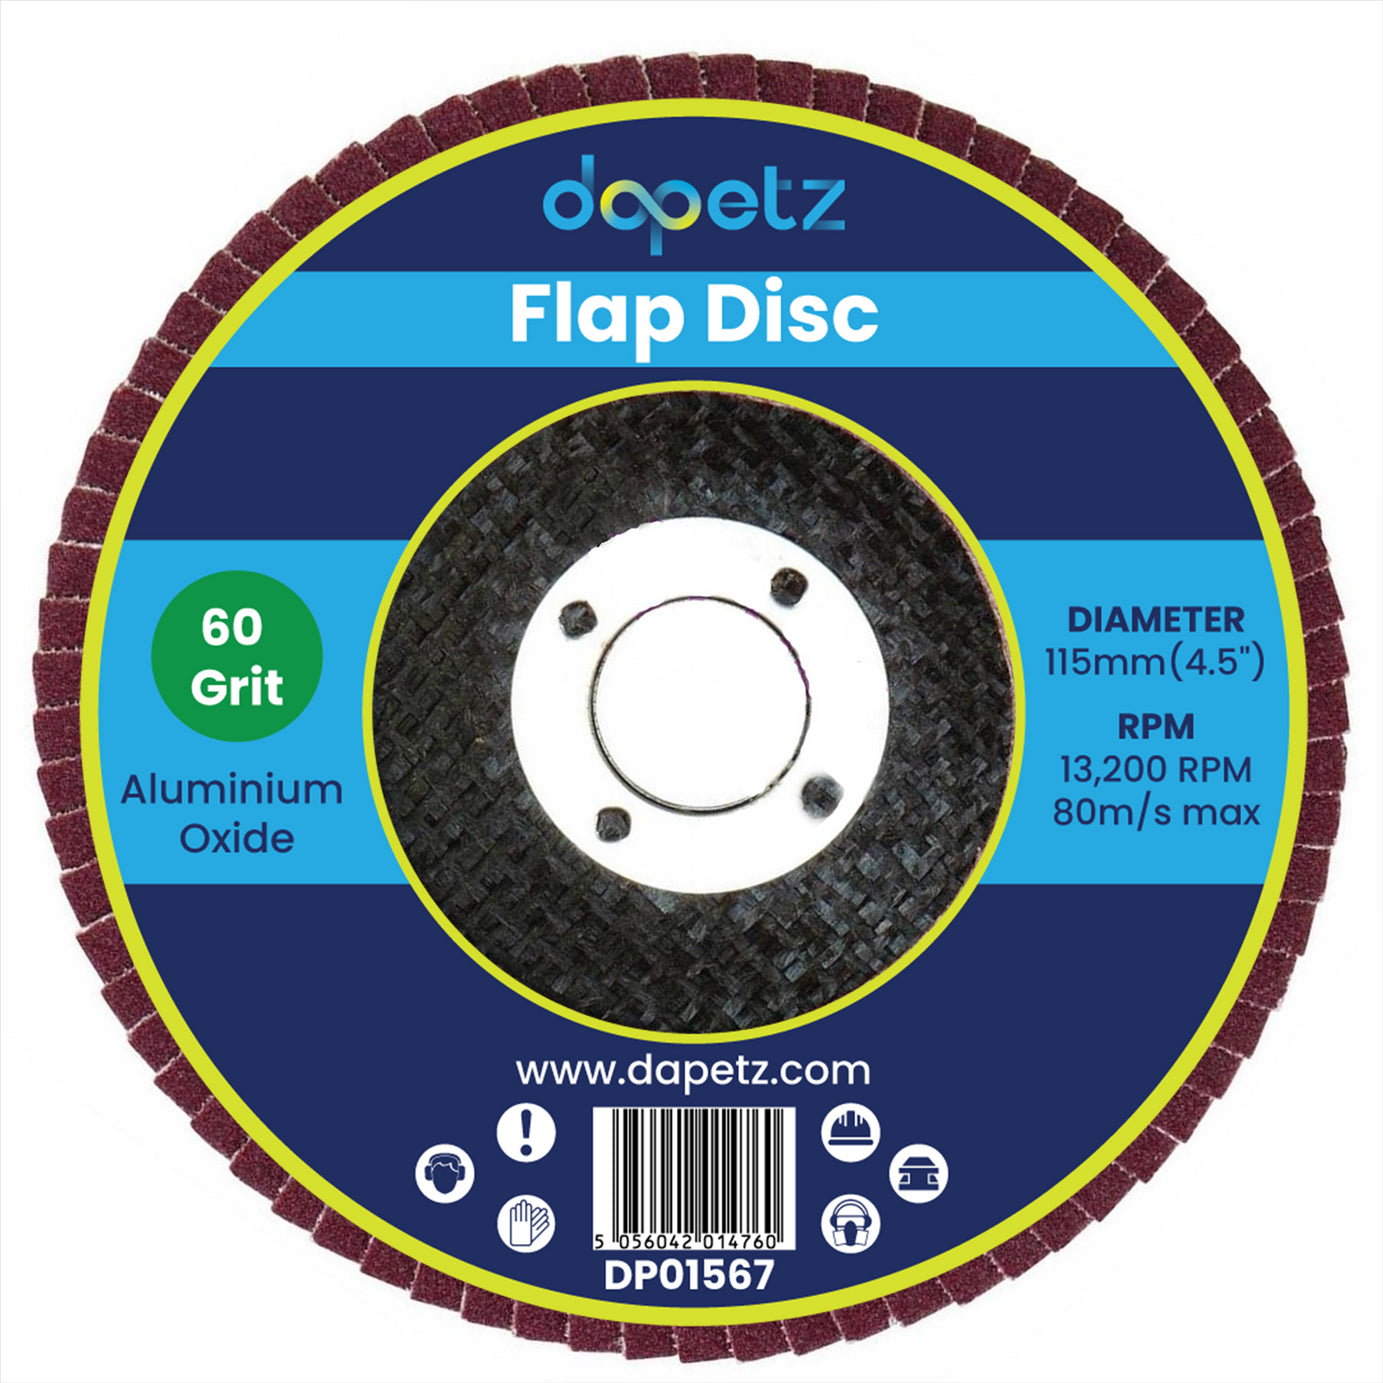 10PCs 4.5" Aluminium Oxide Flap Discs